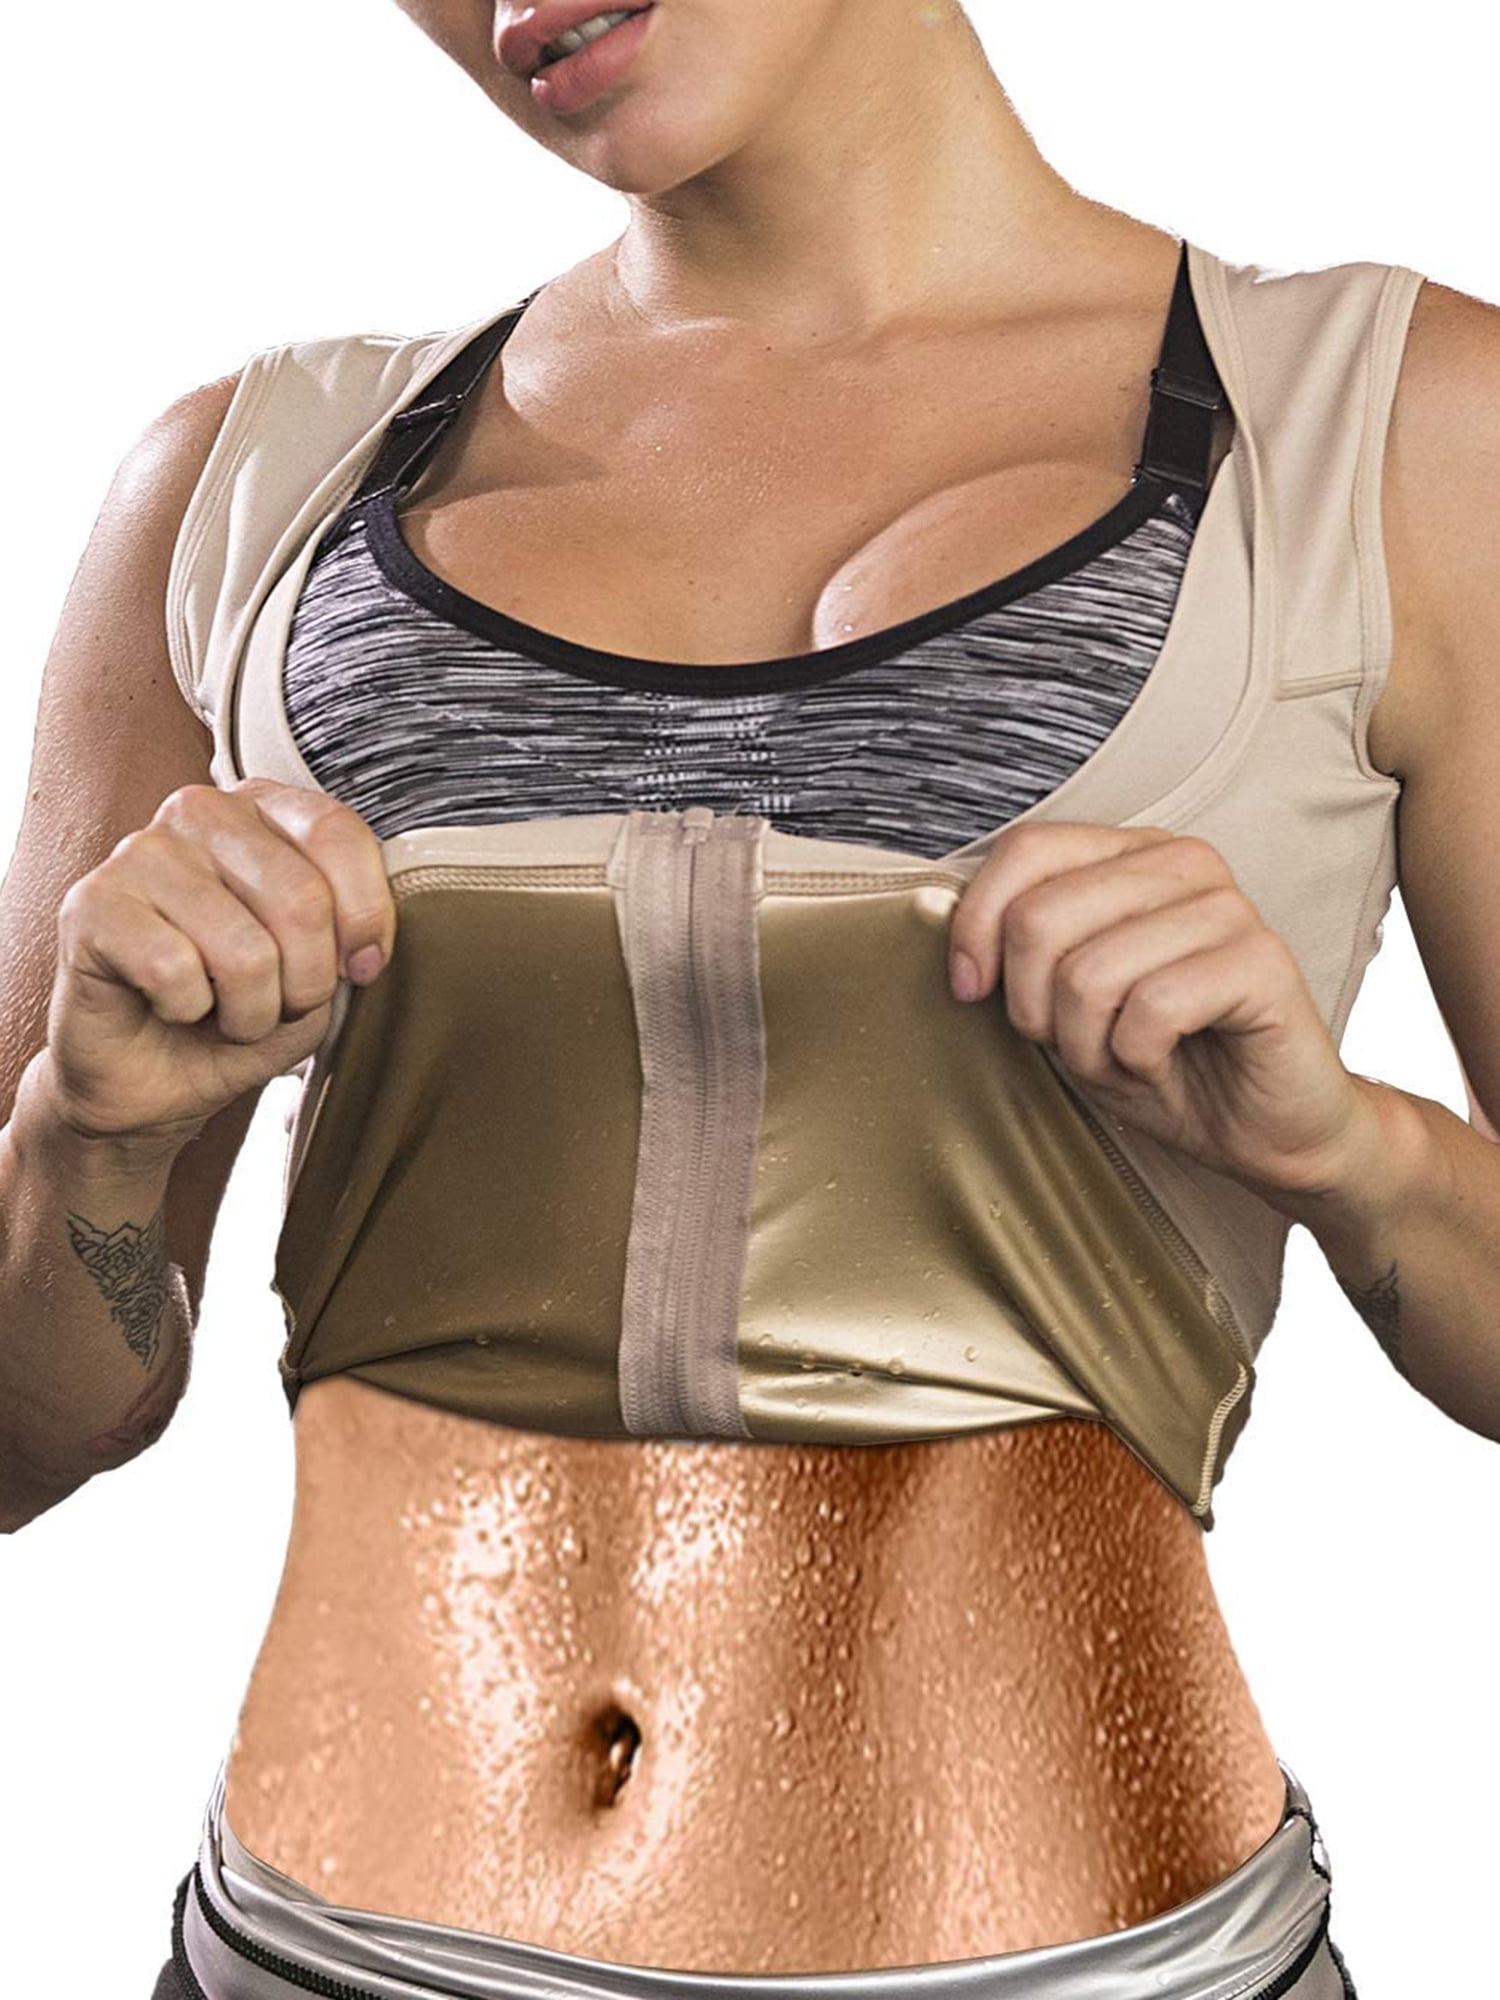 LELINTA Women's Hot Sauna Sweat Vest with Zipper Body Shaper Slimming  Workout Sauna TaLELINTA Top Shapewear For Weight Loss Sweat Sauna Shaper 